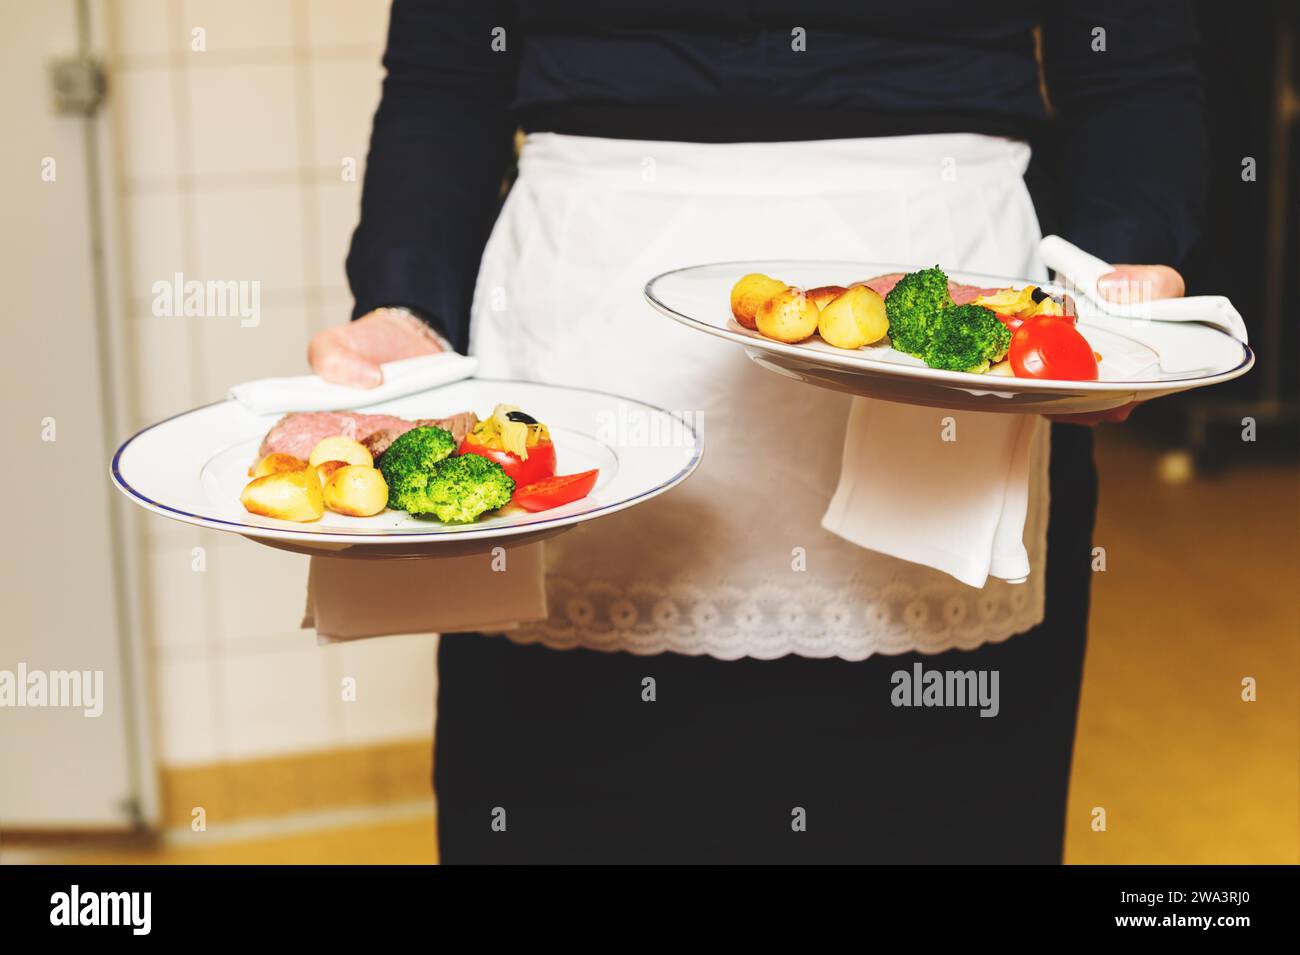 Cameriere portante due piastre con piatto di carne su qualche evento festivo, party, ricevimento di matrimonio o evento di catering Foto Stock